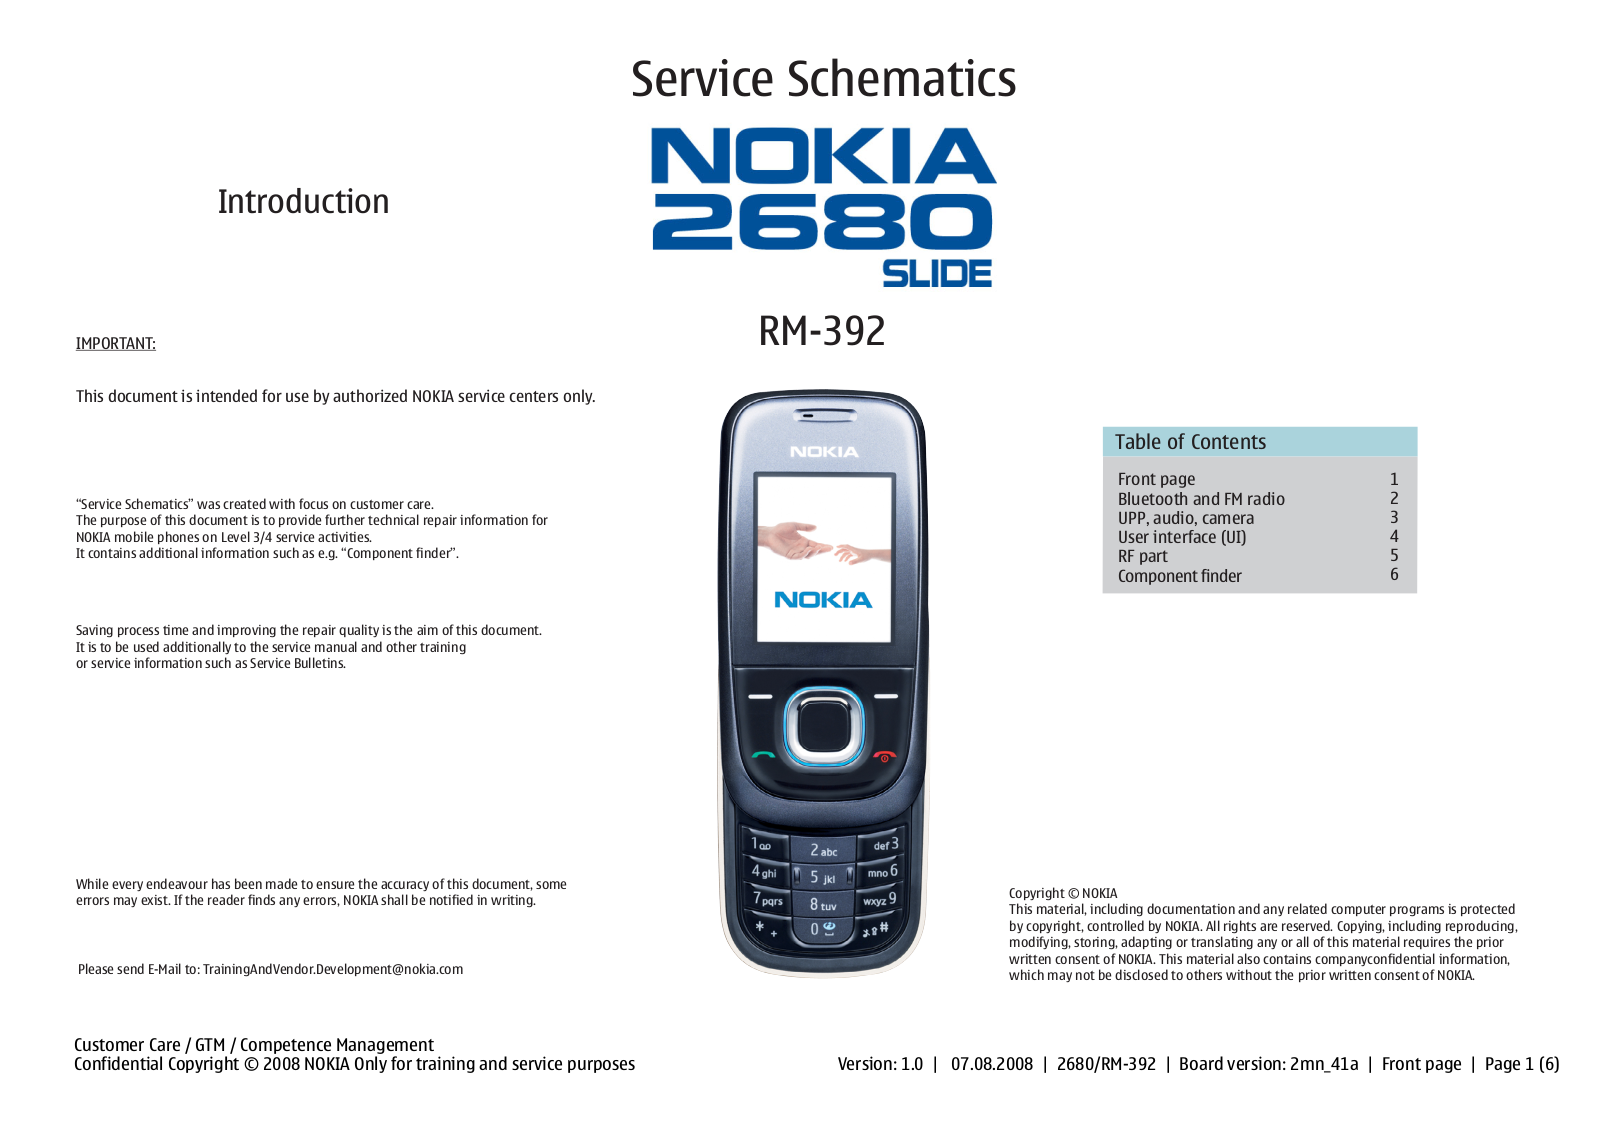 Nokia 2680 slide RM-392, 2680 slide  RM-393 Schematic